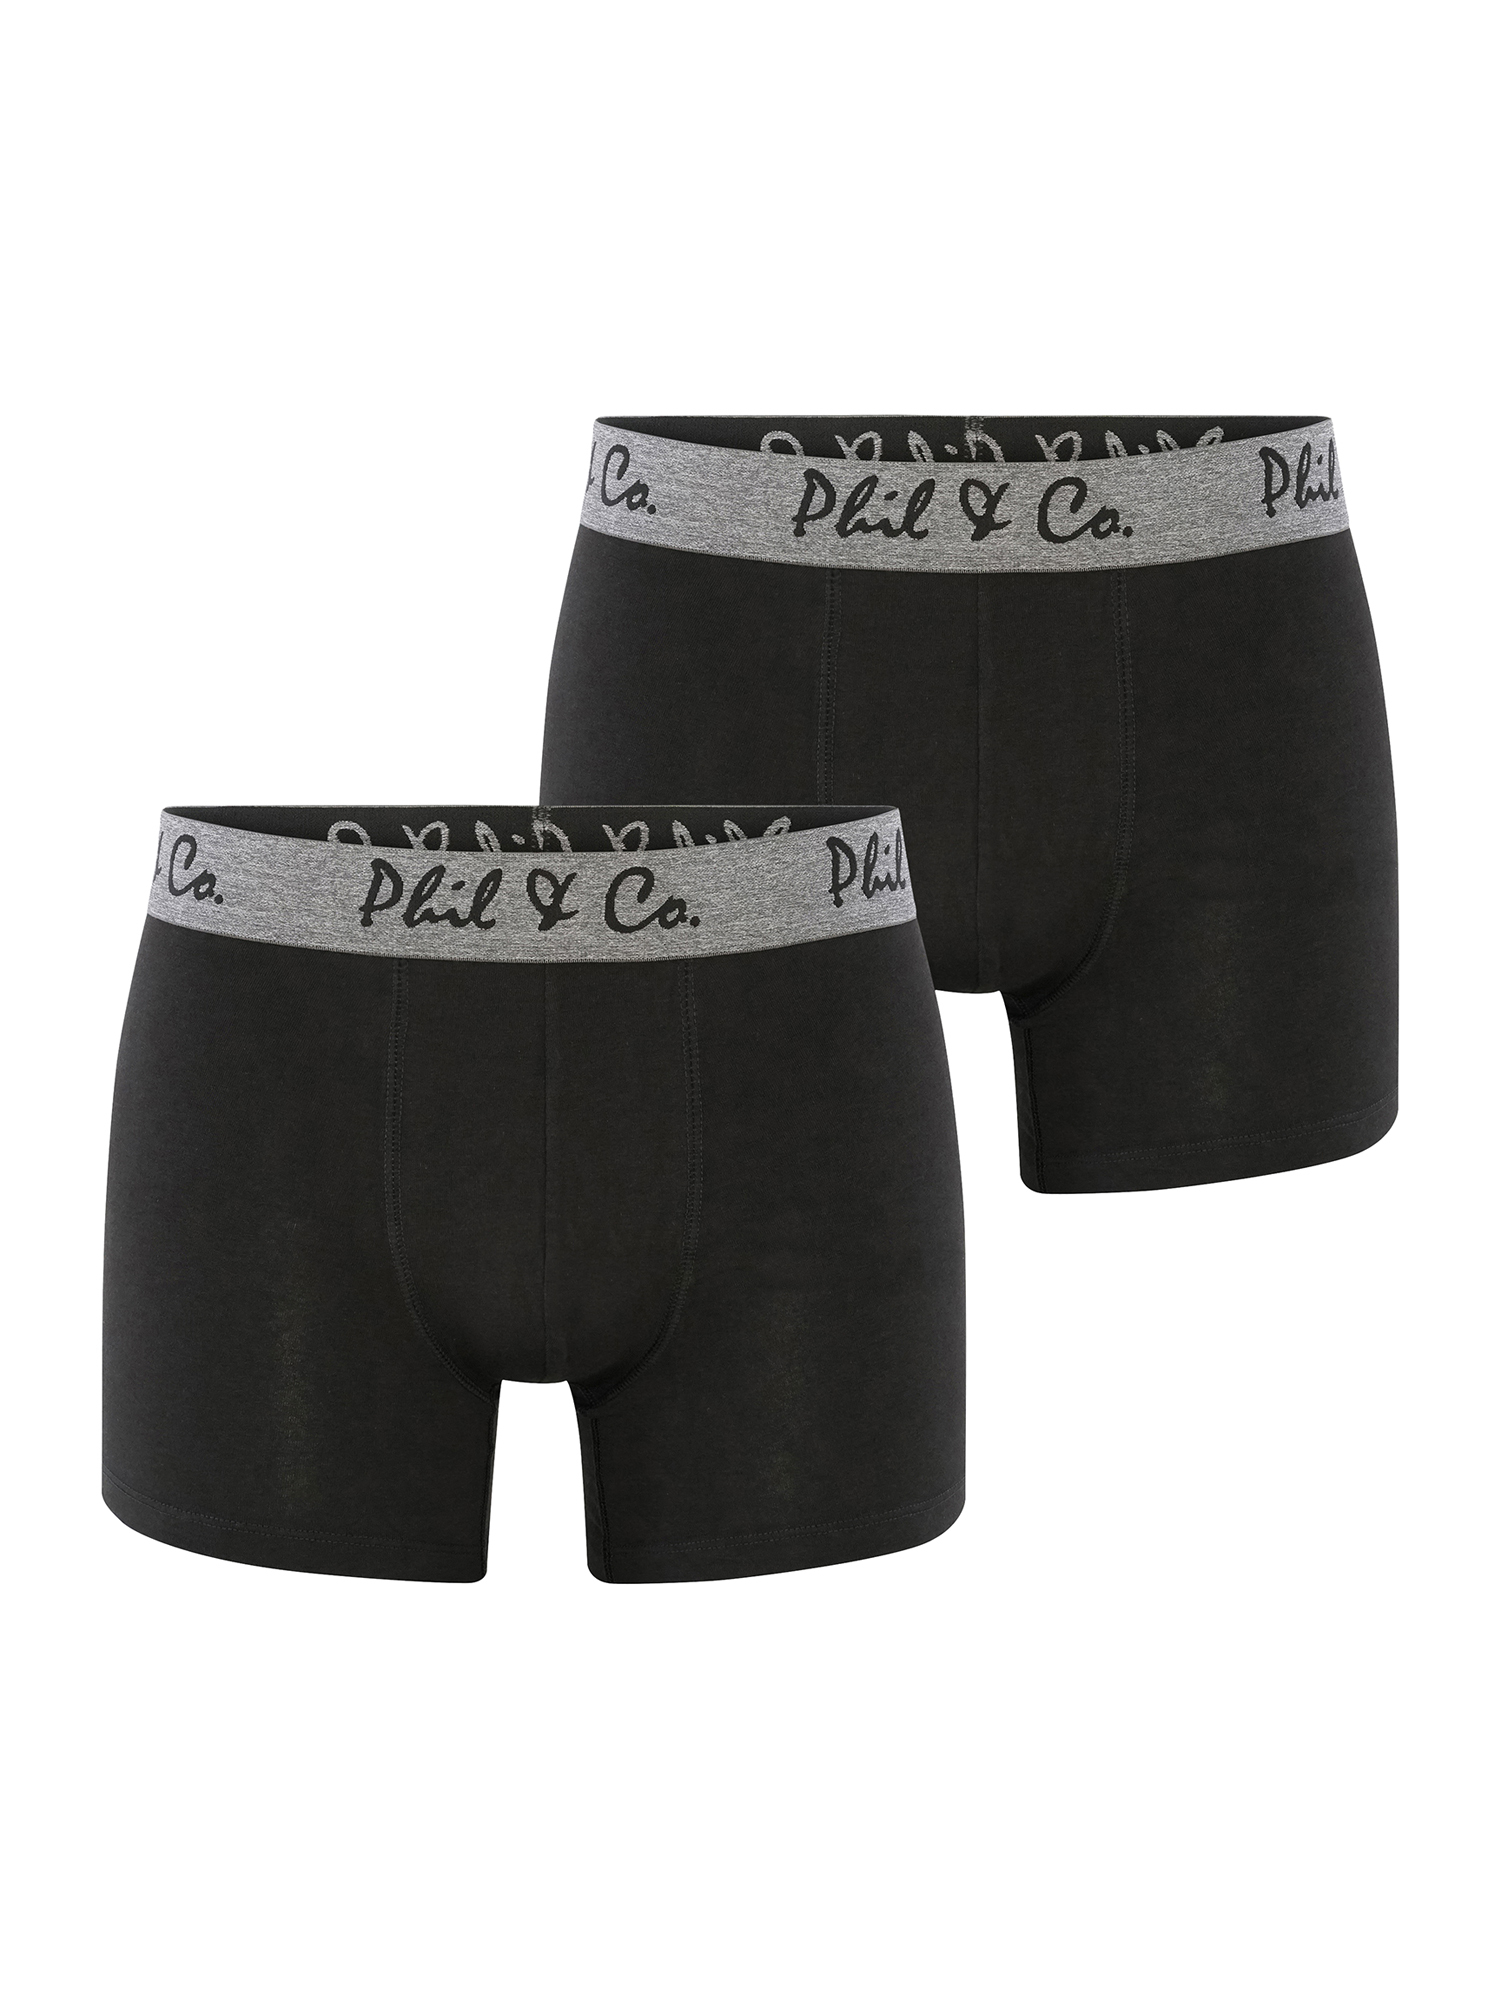 Боксеры Phil & Co Berlin Retroshorts 2-Pack Jersey, черный